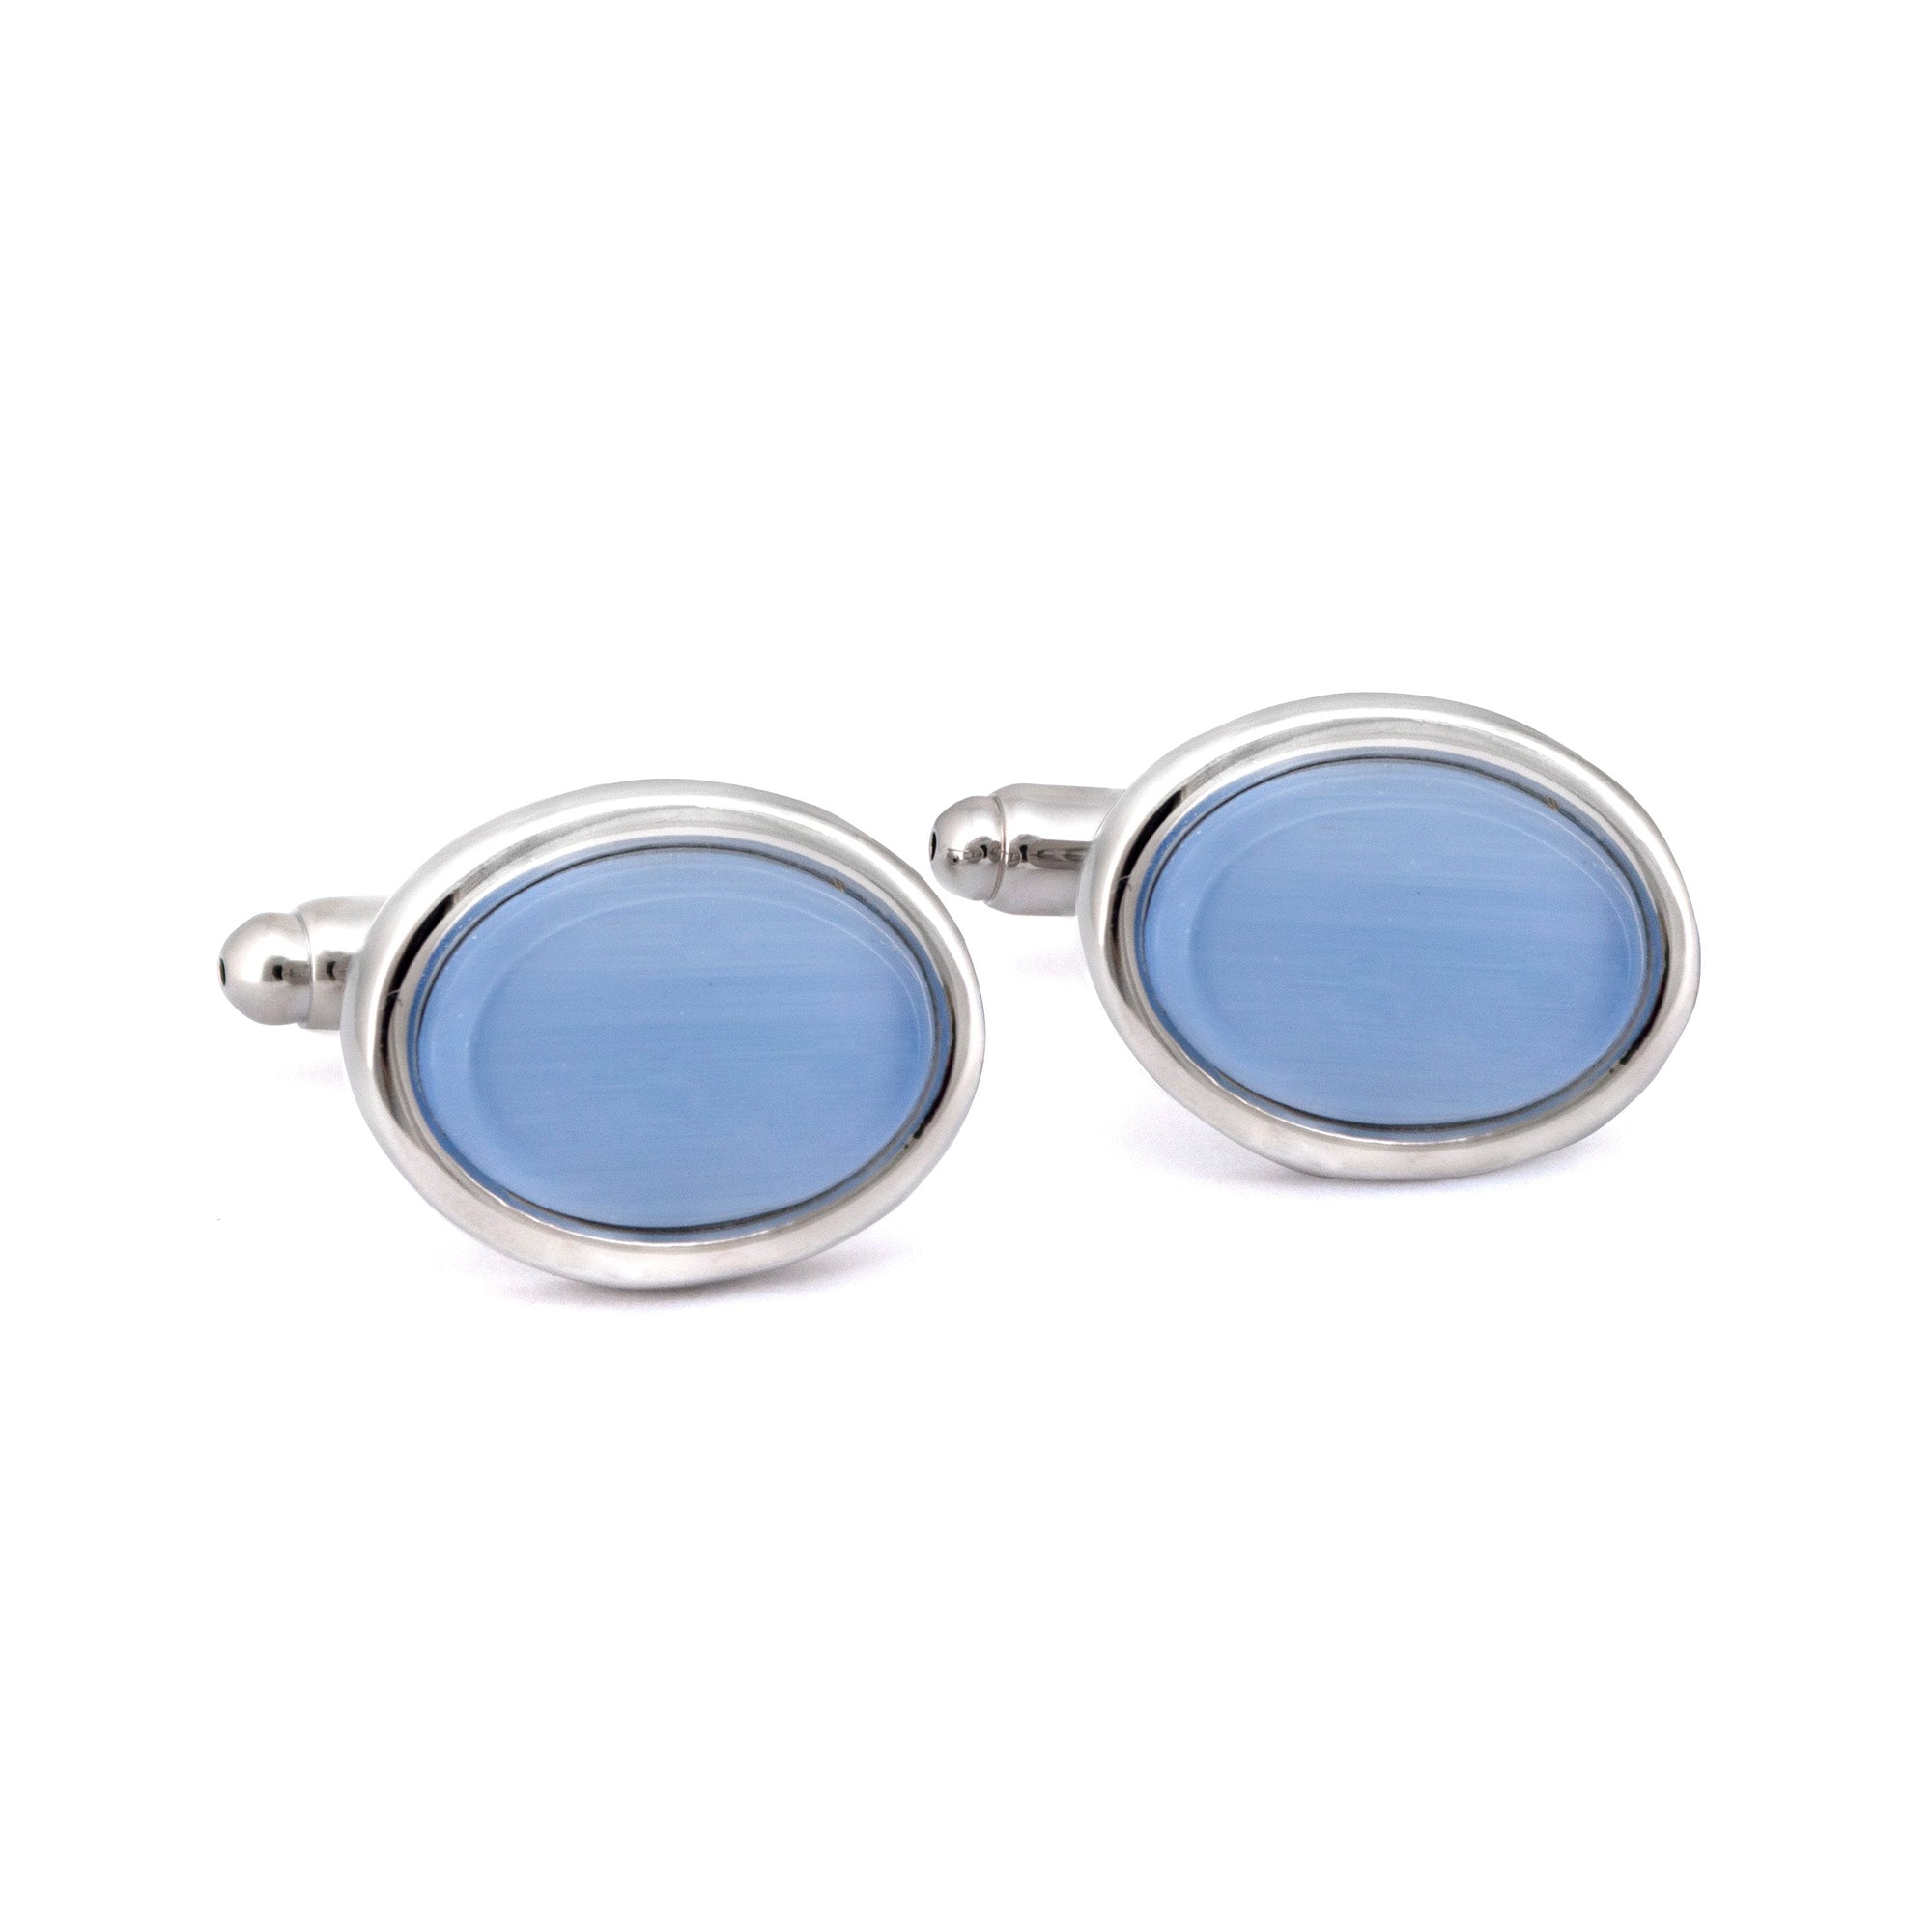 Oval Light Blue Fibre Optic Glass Cufflinks-Cufflinks.com.sg